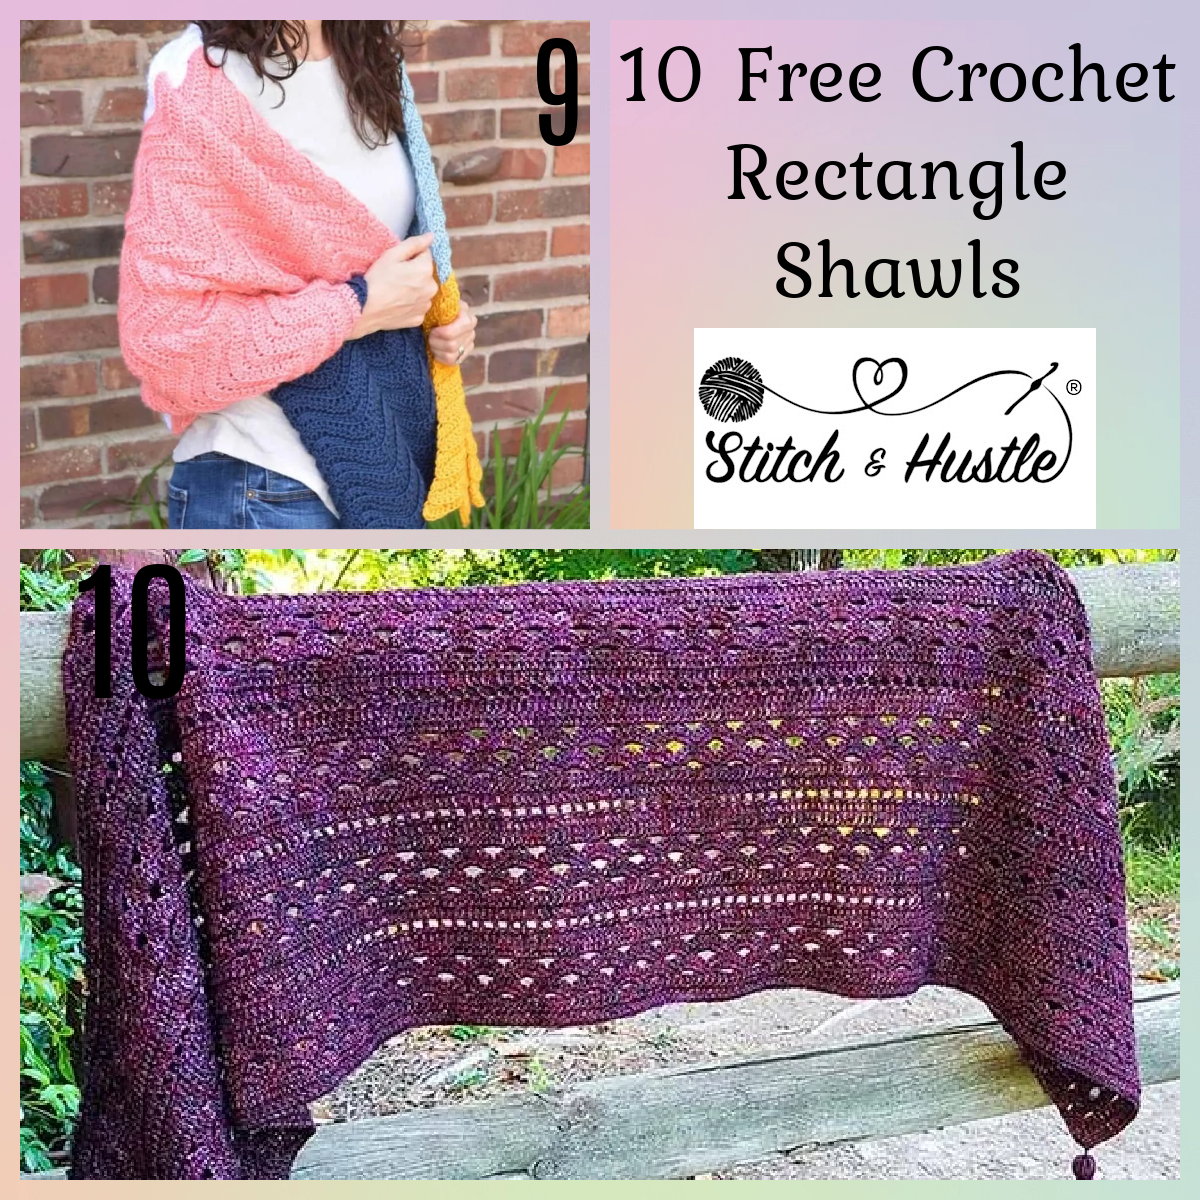 Crochet Rectangle Shawls Free Pattern Round Up — Stitch & Hustle